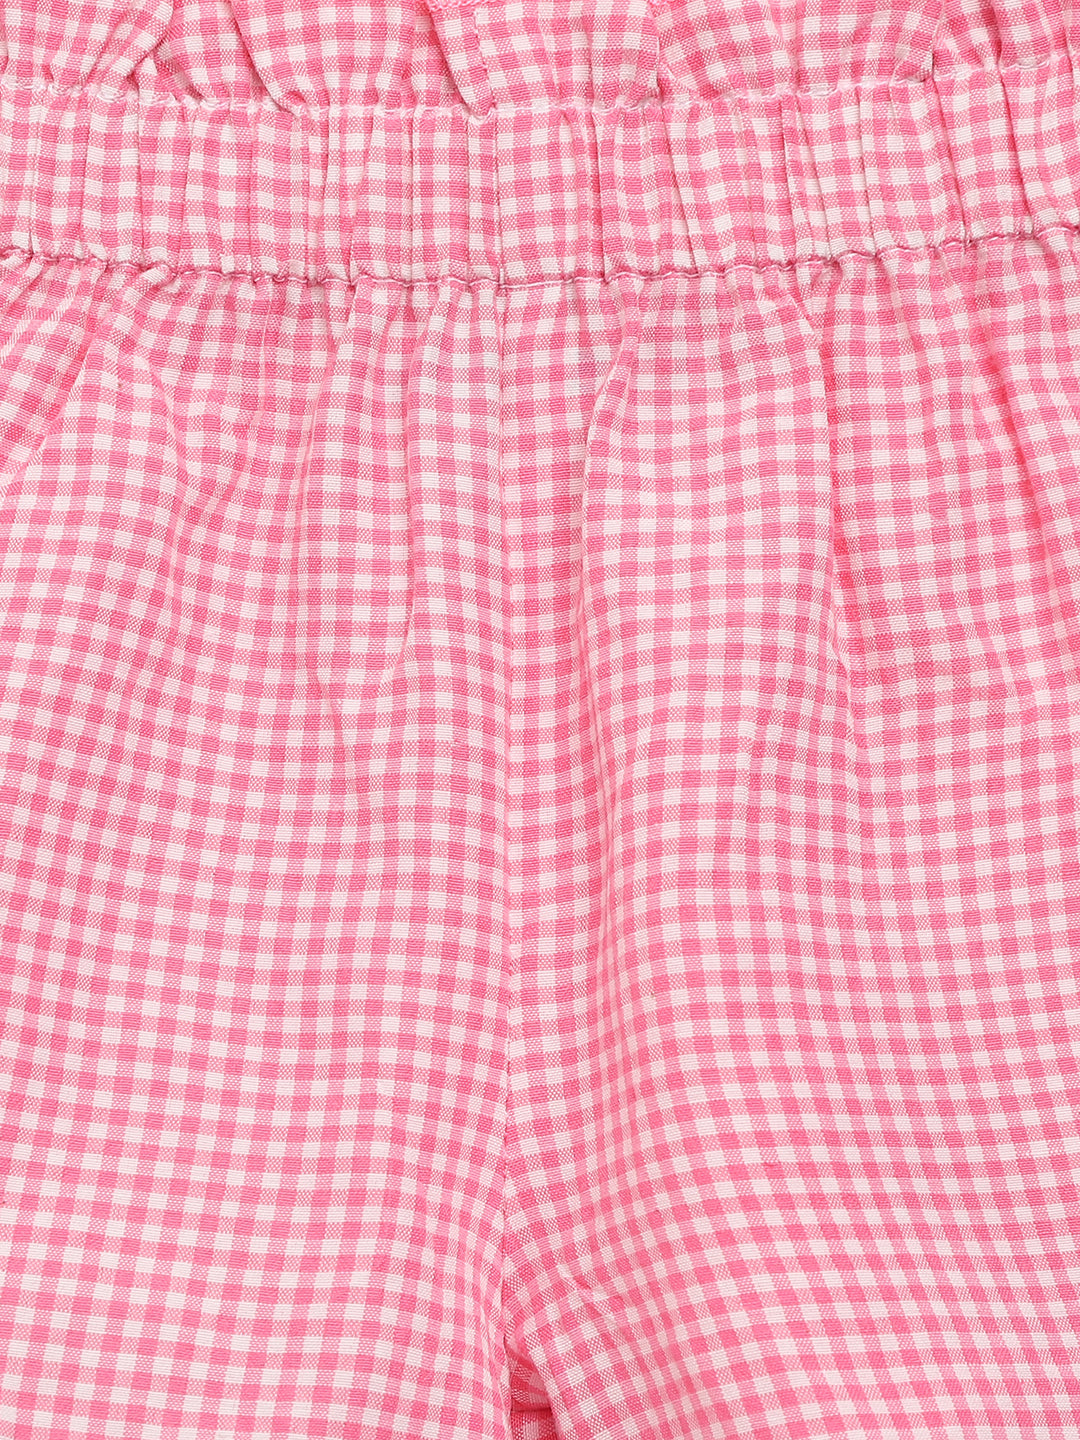 Nautinati Girls Pink Checked Top With Shorts